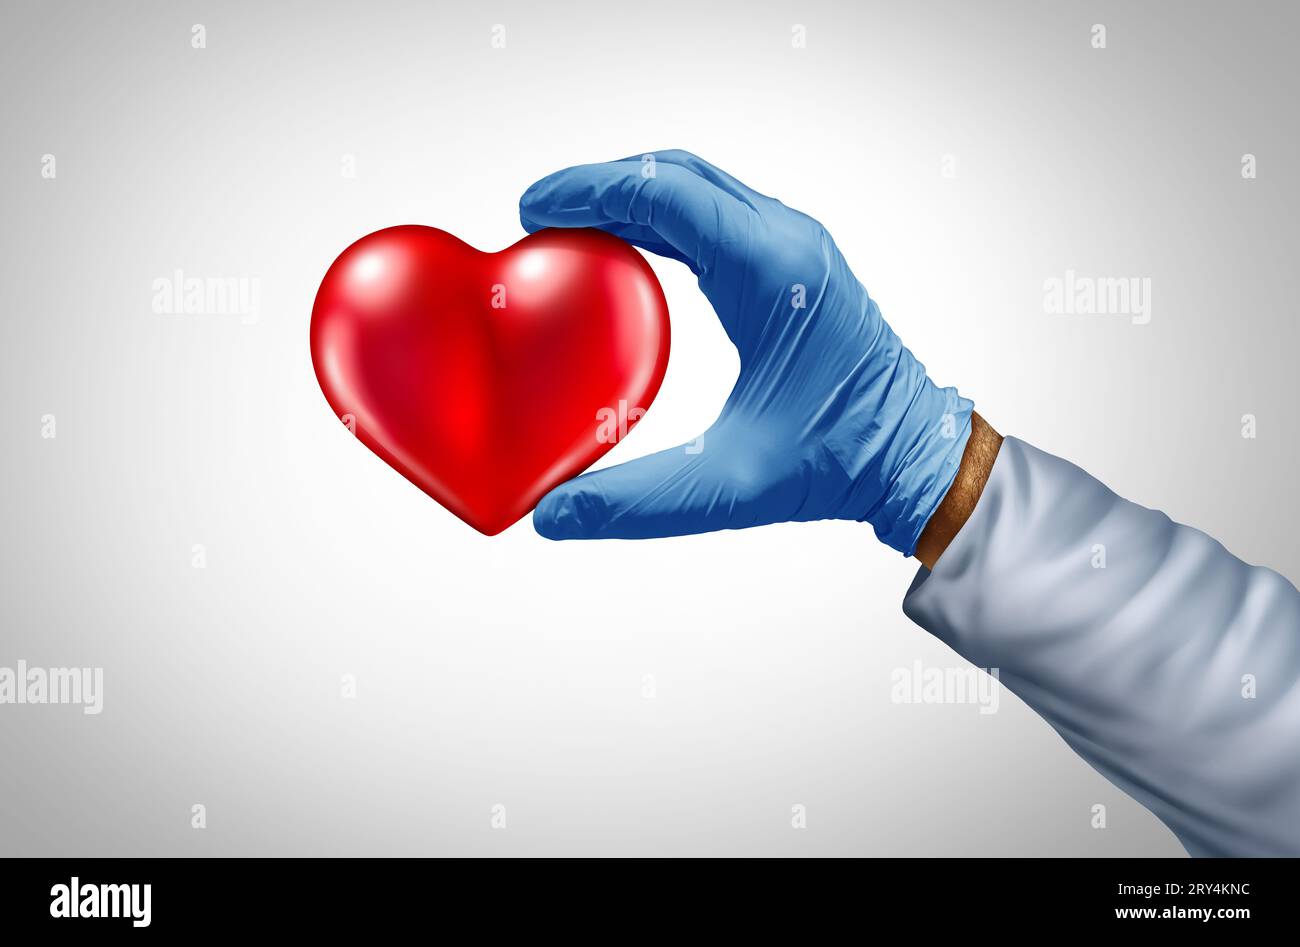 Assistenza sanitaria cura del cuore e del cuore o cardiologia e medicina cardiovascolare come medico o infermiere e personale medico di una clinica o ospedale Foto Stock